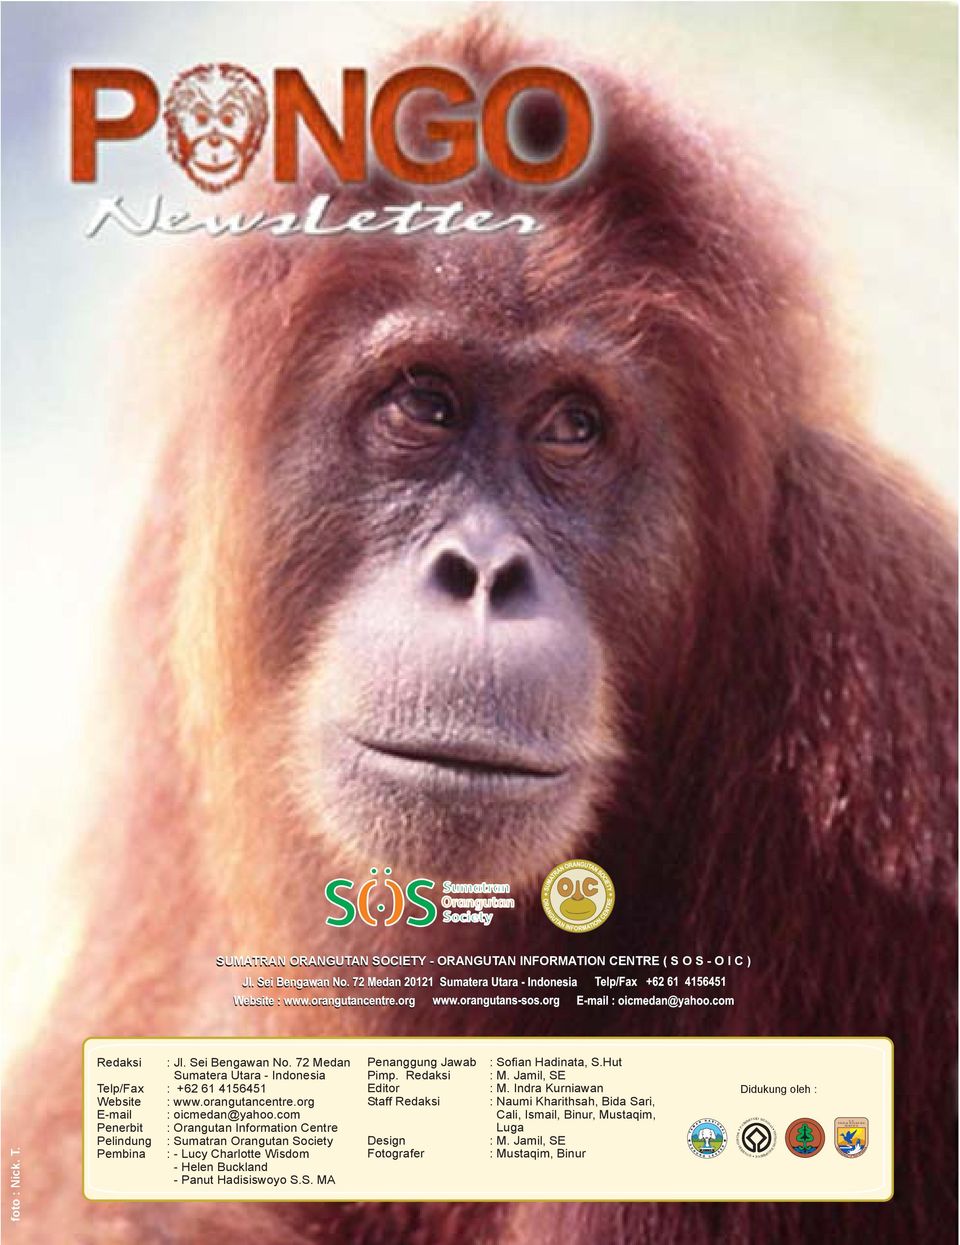 com Penerbit : Orangutan Information Centre Pelindung Pembina : Sumatran Orangutan Society : - Lucy Charlotte Wisdom - Helen Buckland - Panut Hadisiswoyo S.S. MA Penanggung Jawab Pimp.